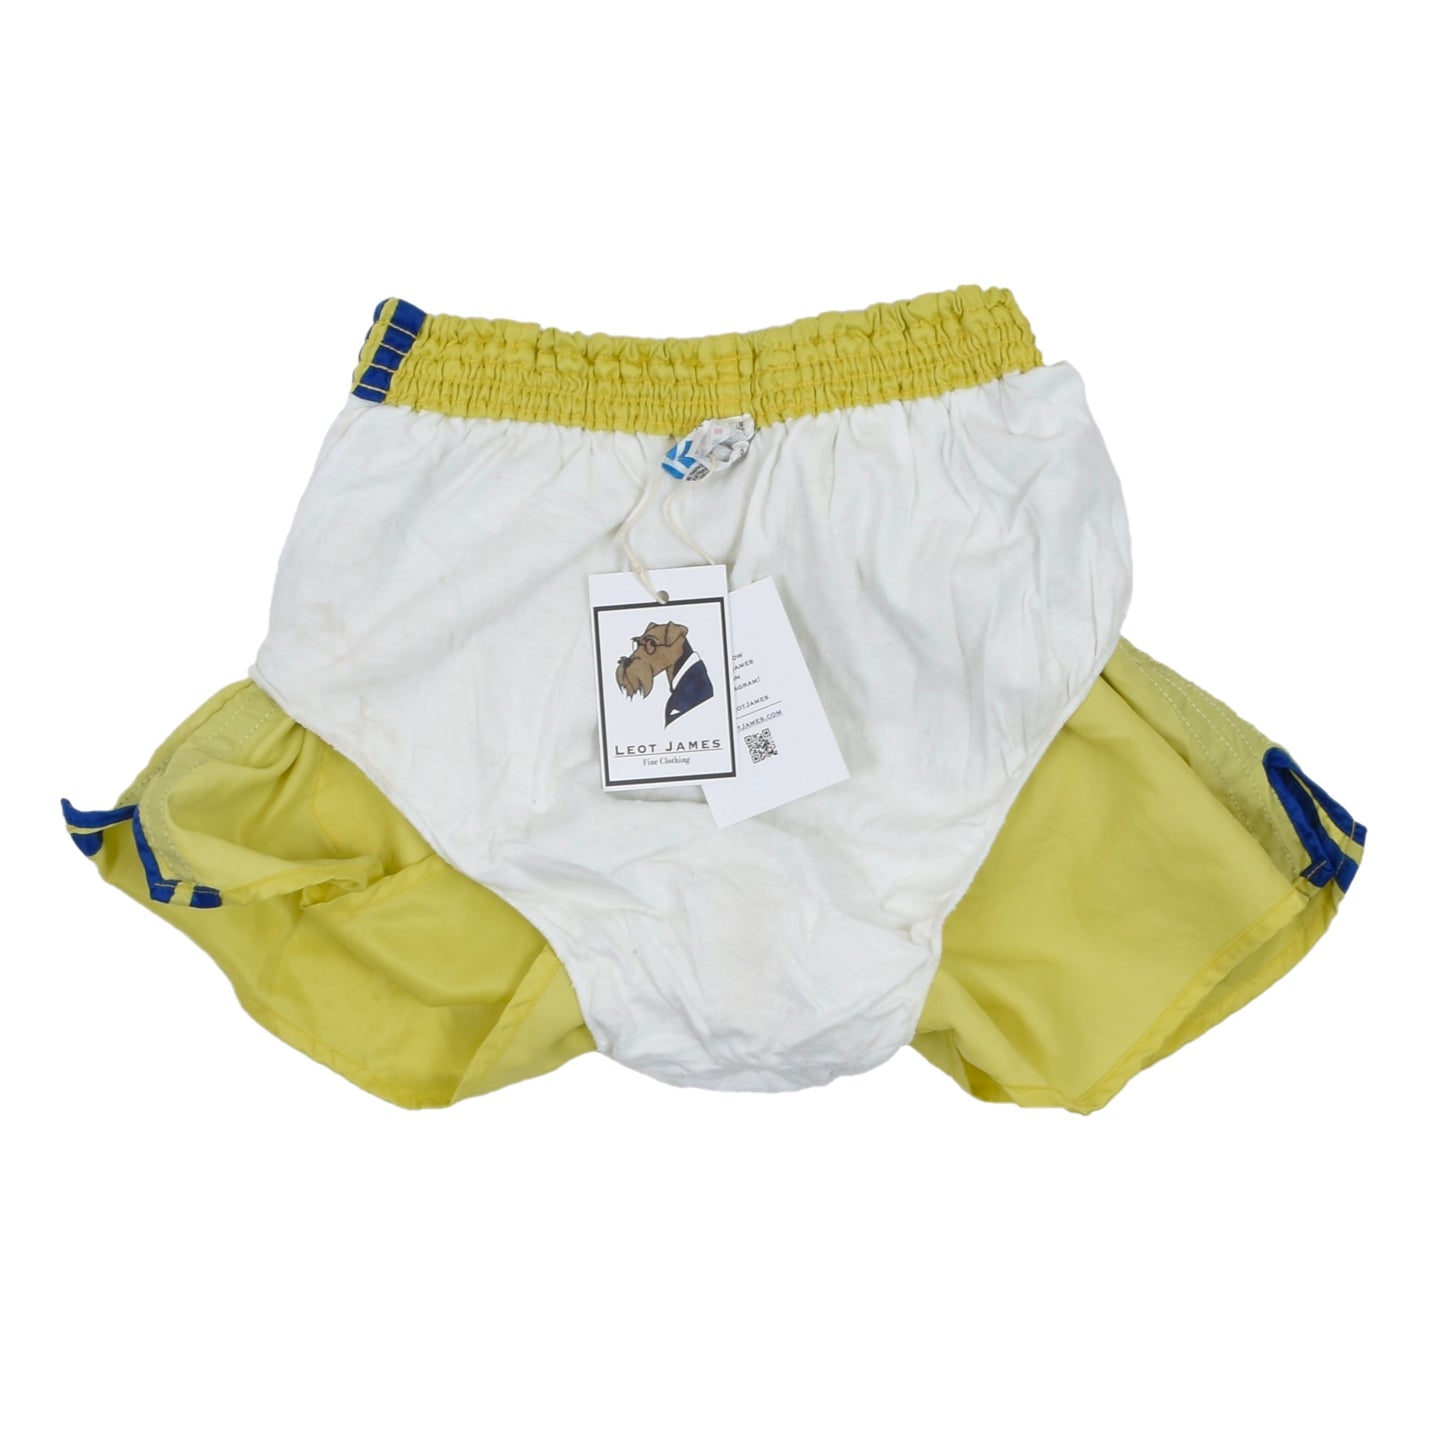 Vintage Adidas Sprinter Shorts Größe D7 - Gelb